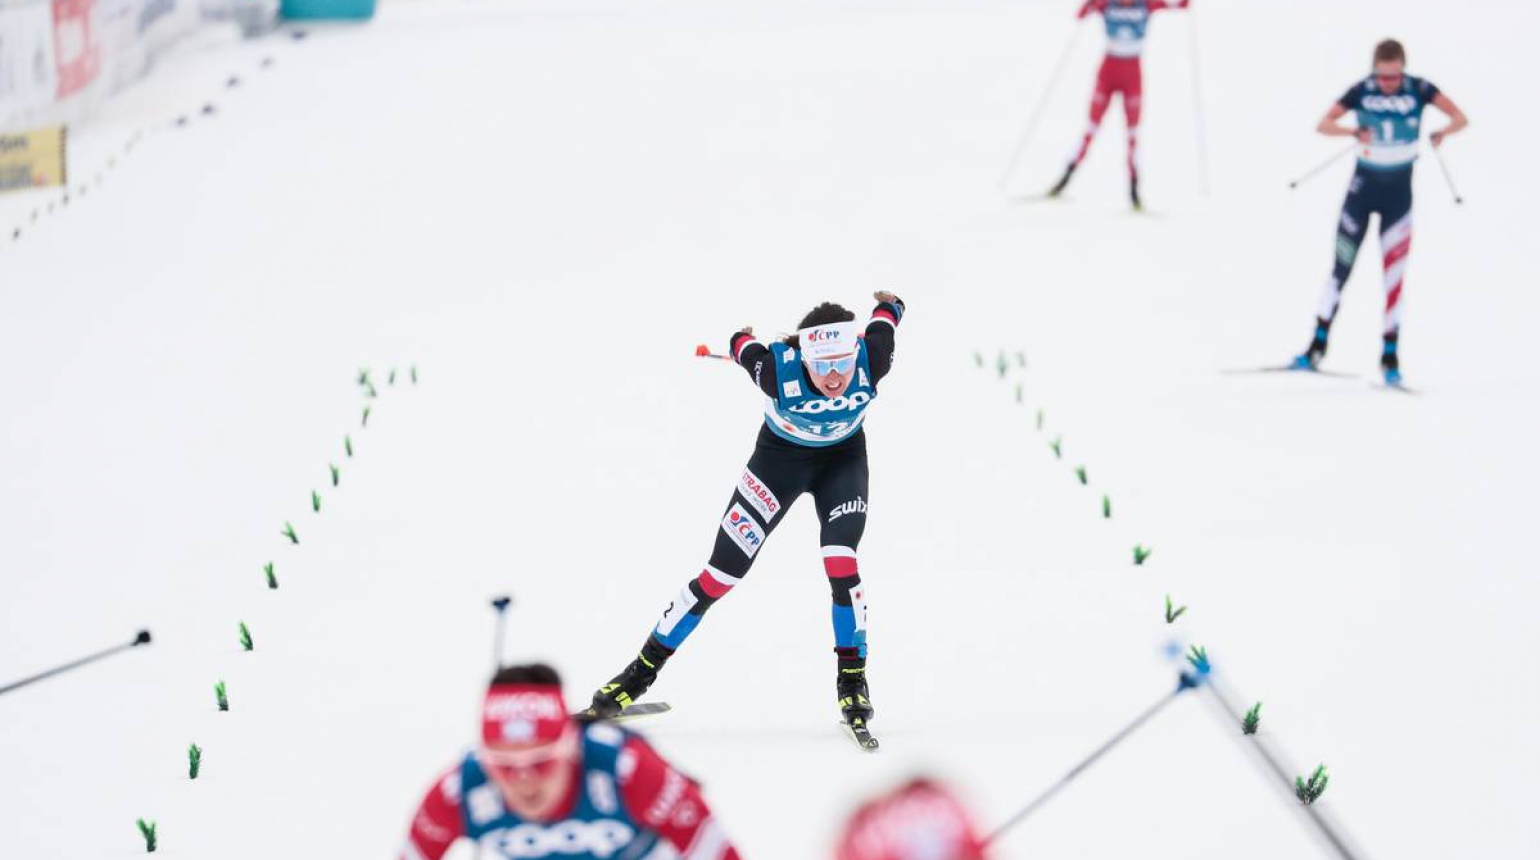 Mohla jsem bojovat o desítku, ale zpomalily mě křeče, řekla Katka Razýmová po skiatlonu